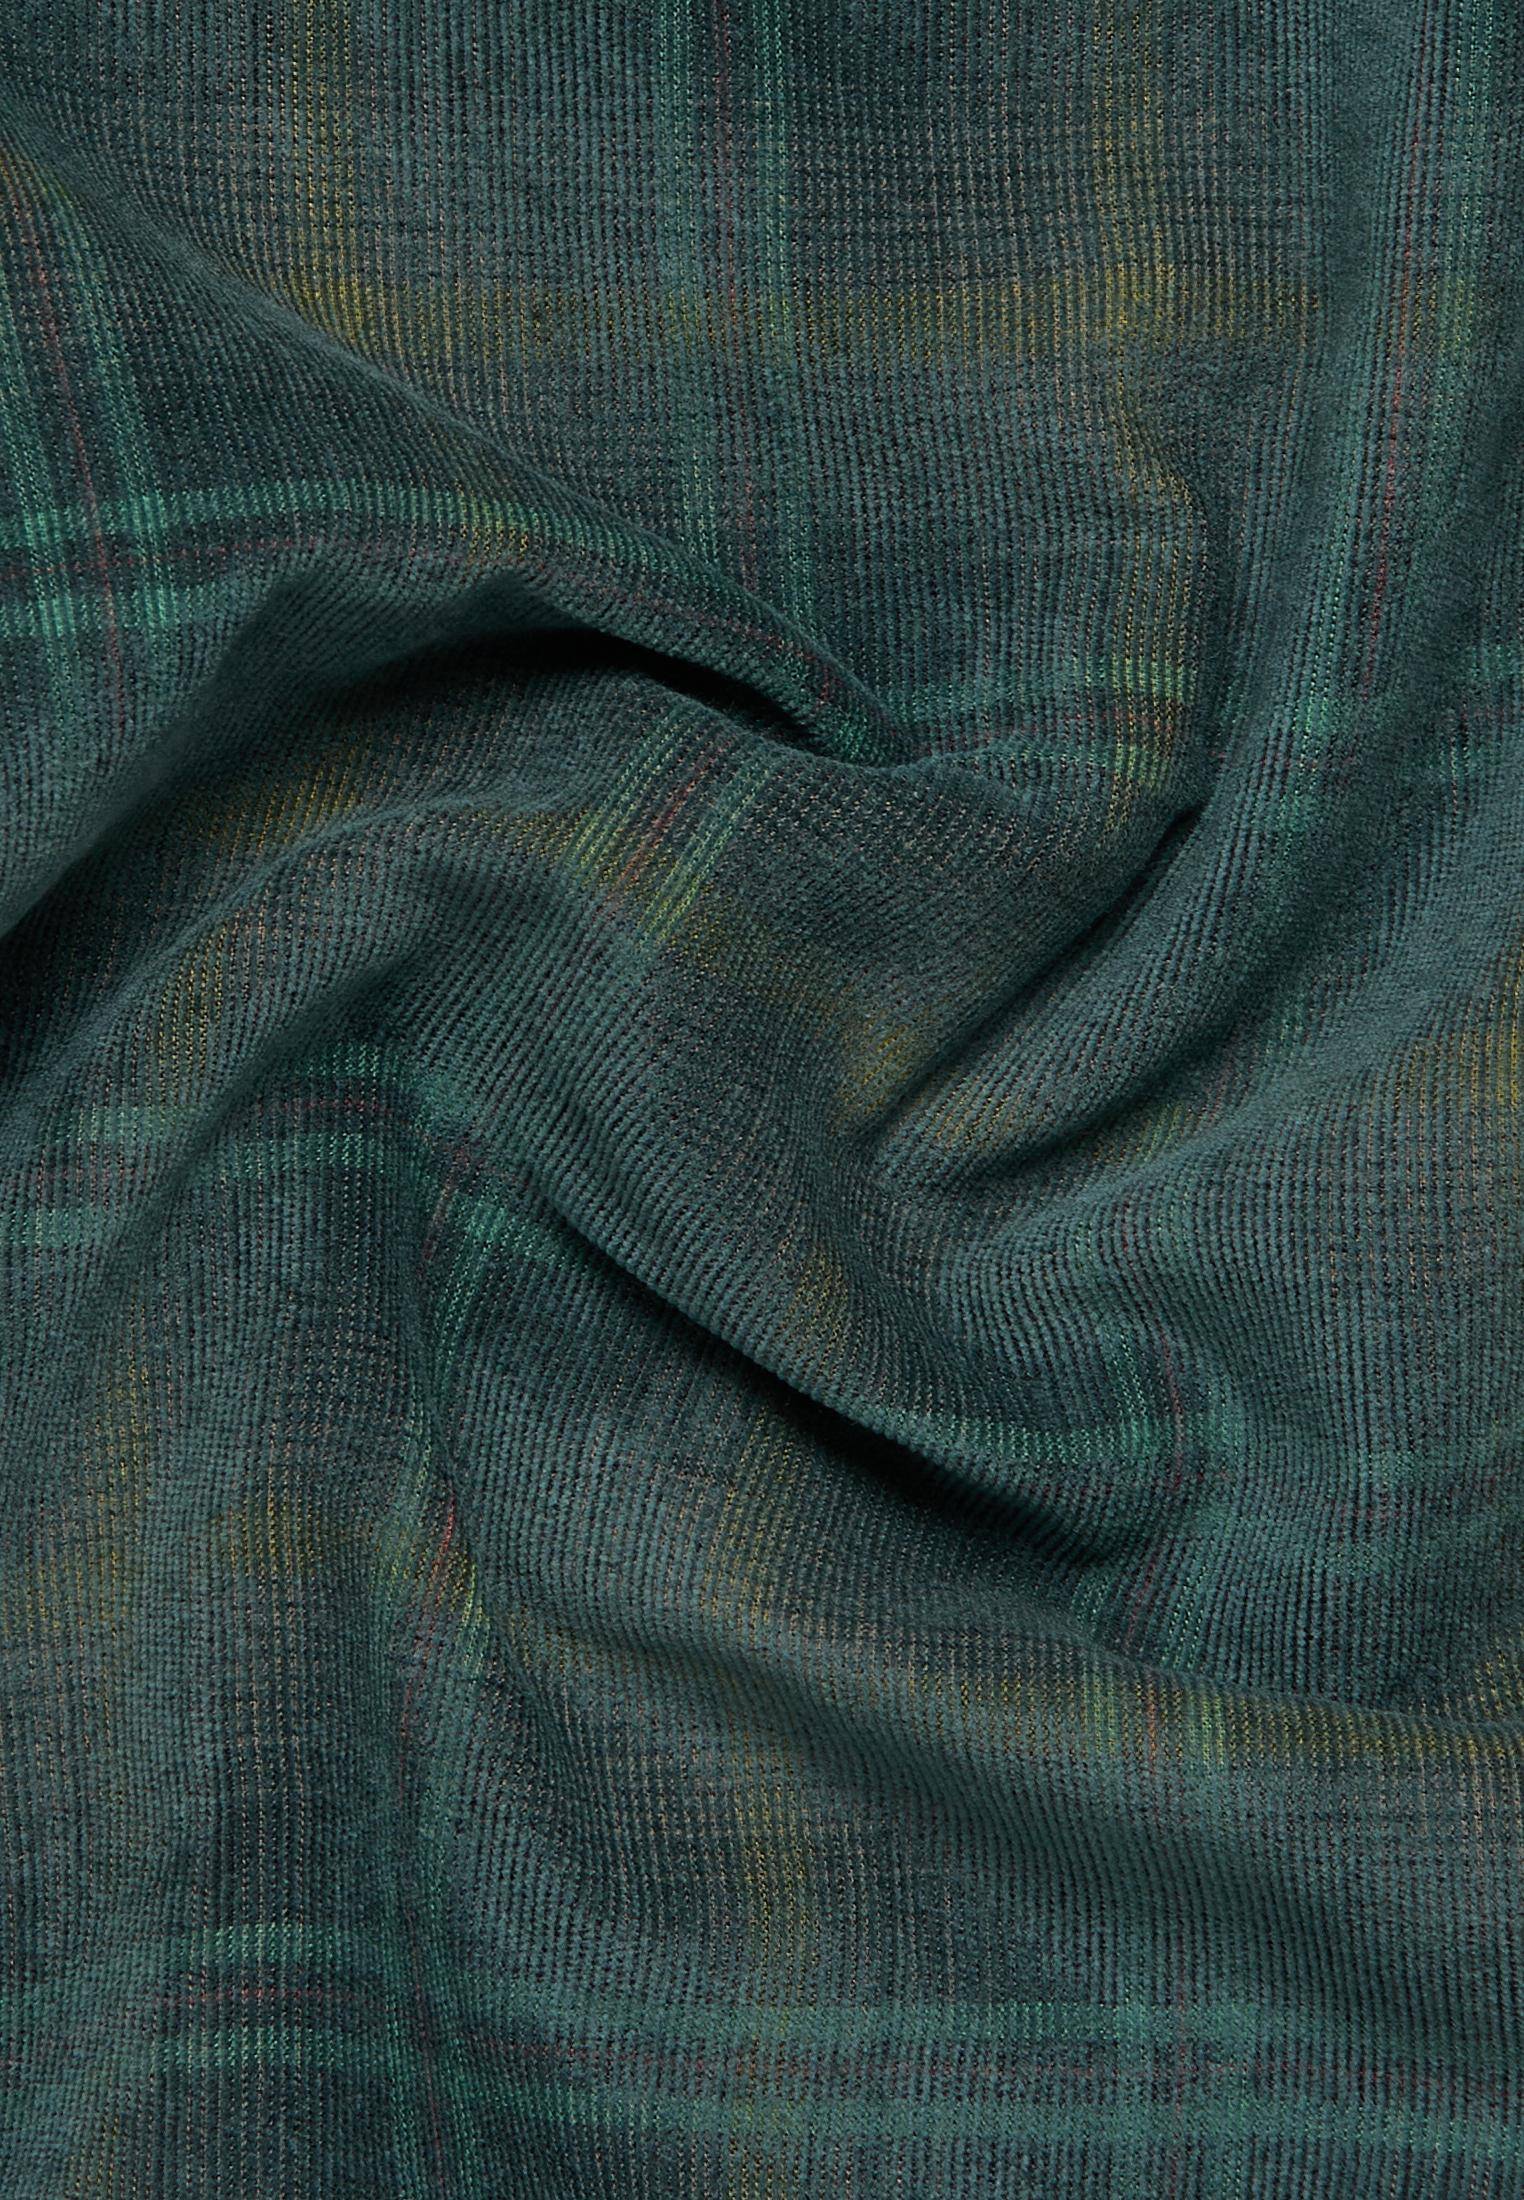 Мужская рубашка ETERNA, зеленая, цвет зеленый, размер 50 - фото 2